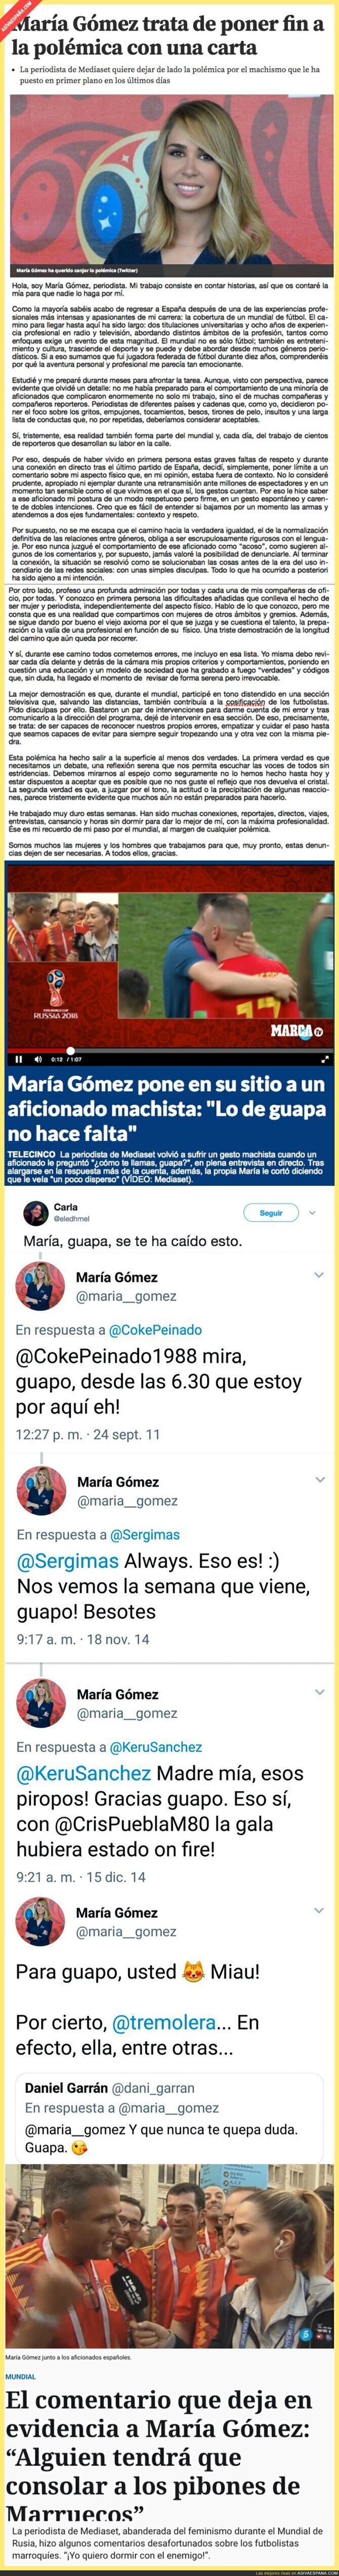 Rescatan tuits del pasado de María Gómez que dejan en evidencia su feminismo oportunista